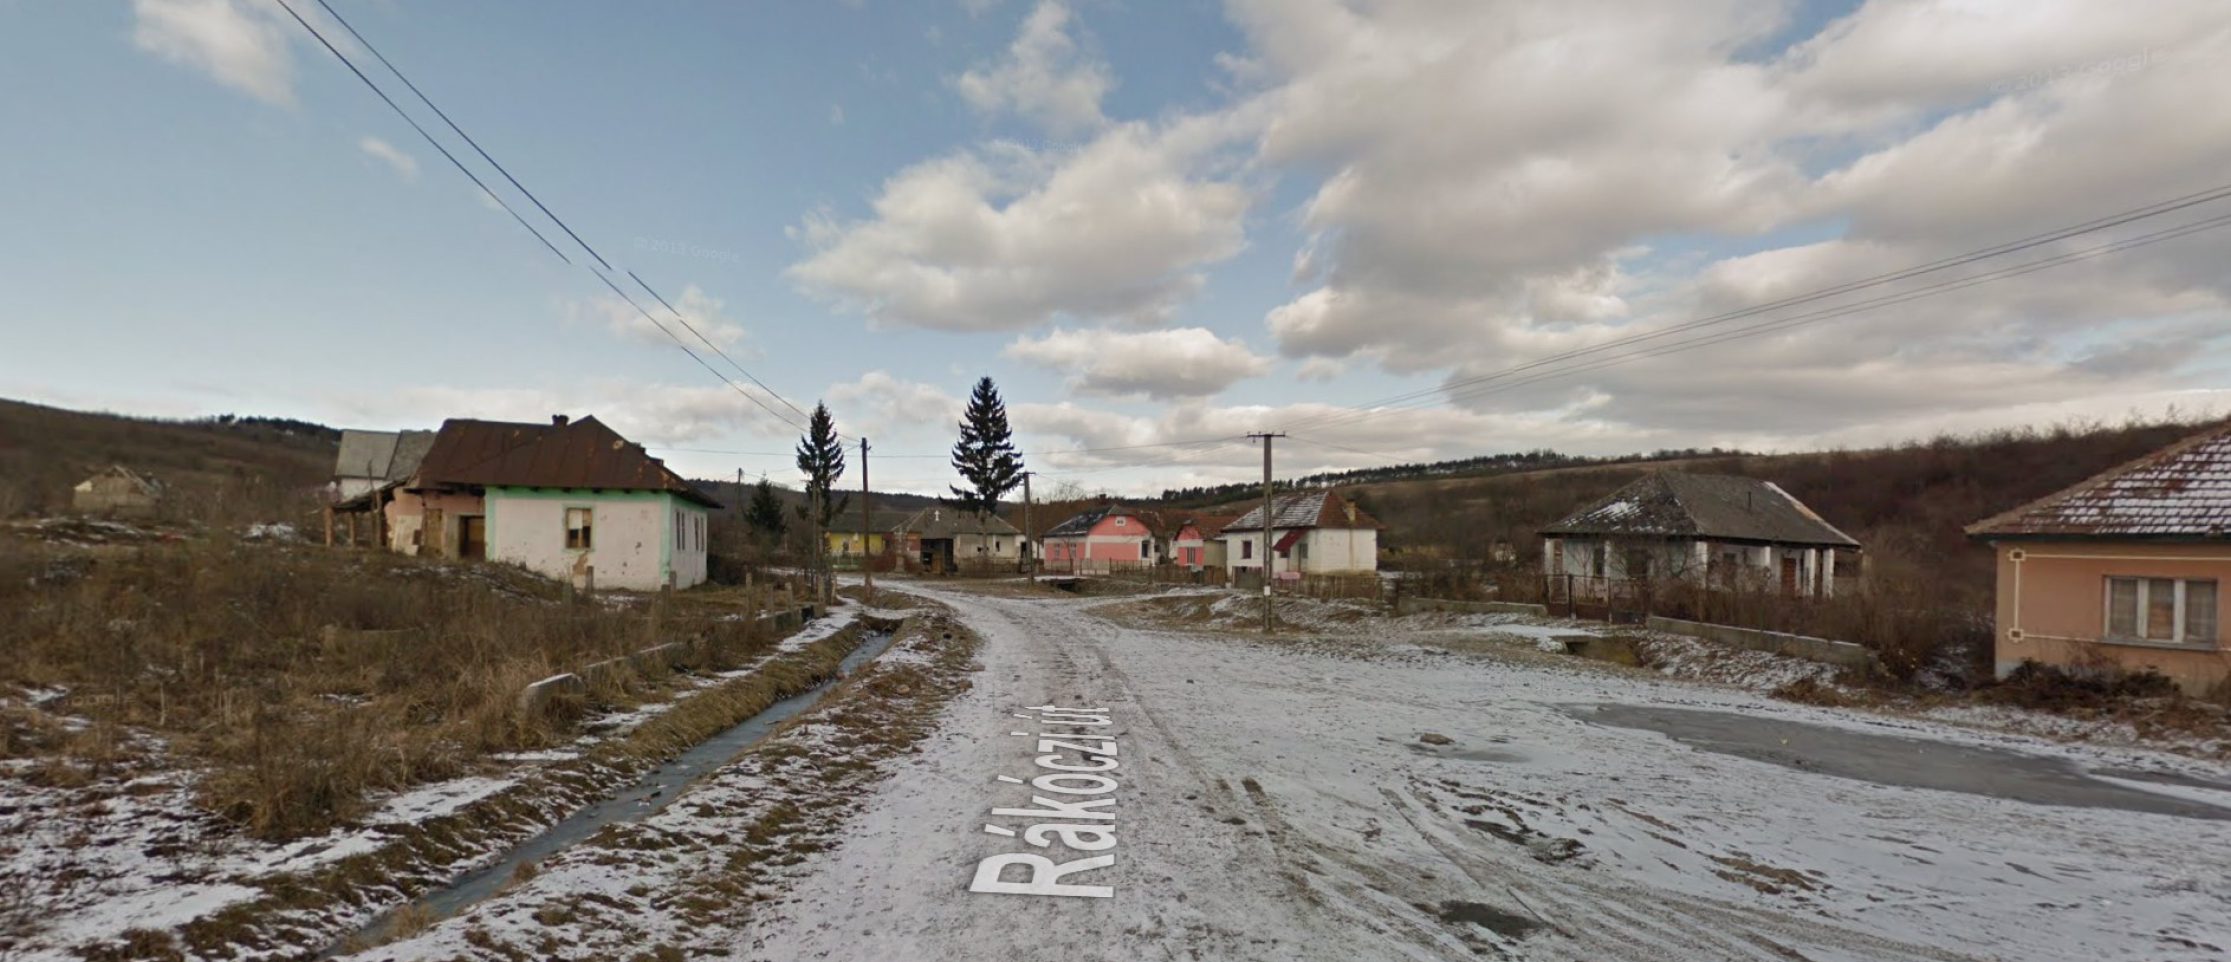 Csetenye utcakép Google Street View fotón